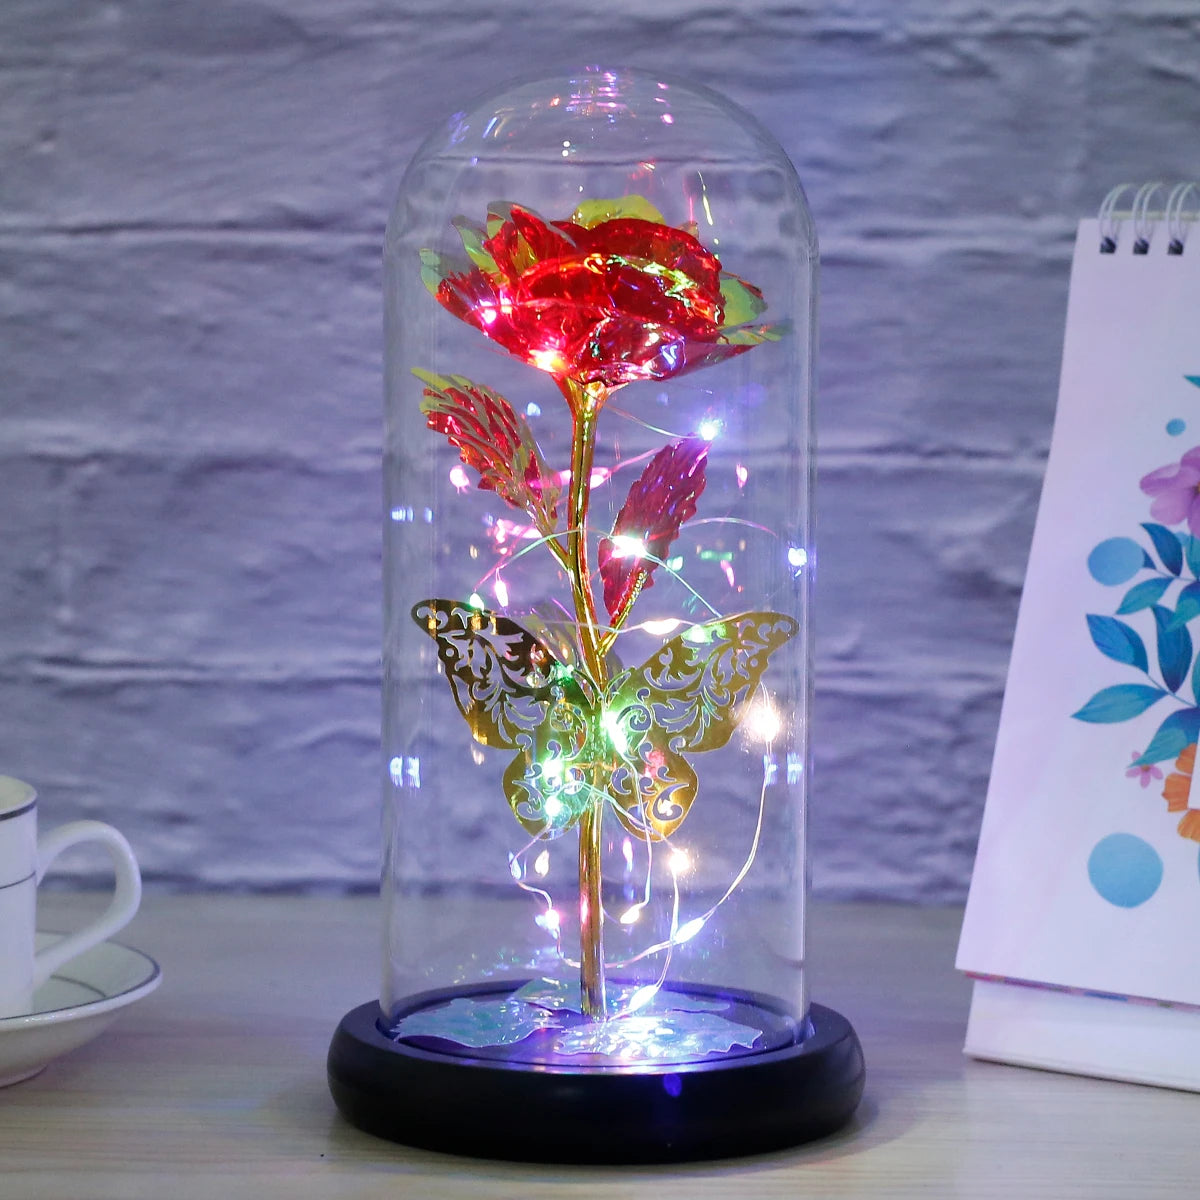 Rosenlicht künstliche Galaxie Rosenlampe mit Schmetterling und farbenfrohe LED -Rosenblumen in Glasbatteriegeschenken für Frauen